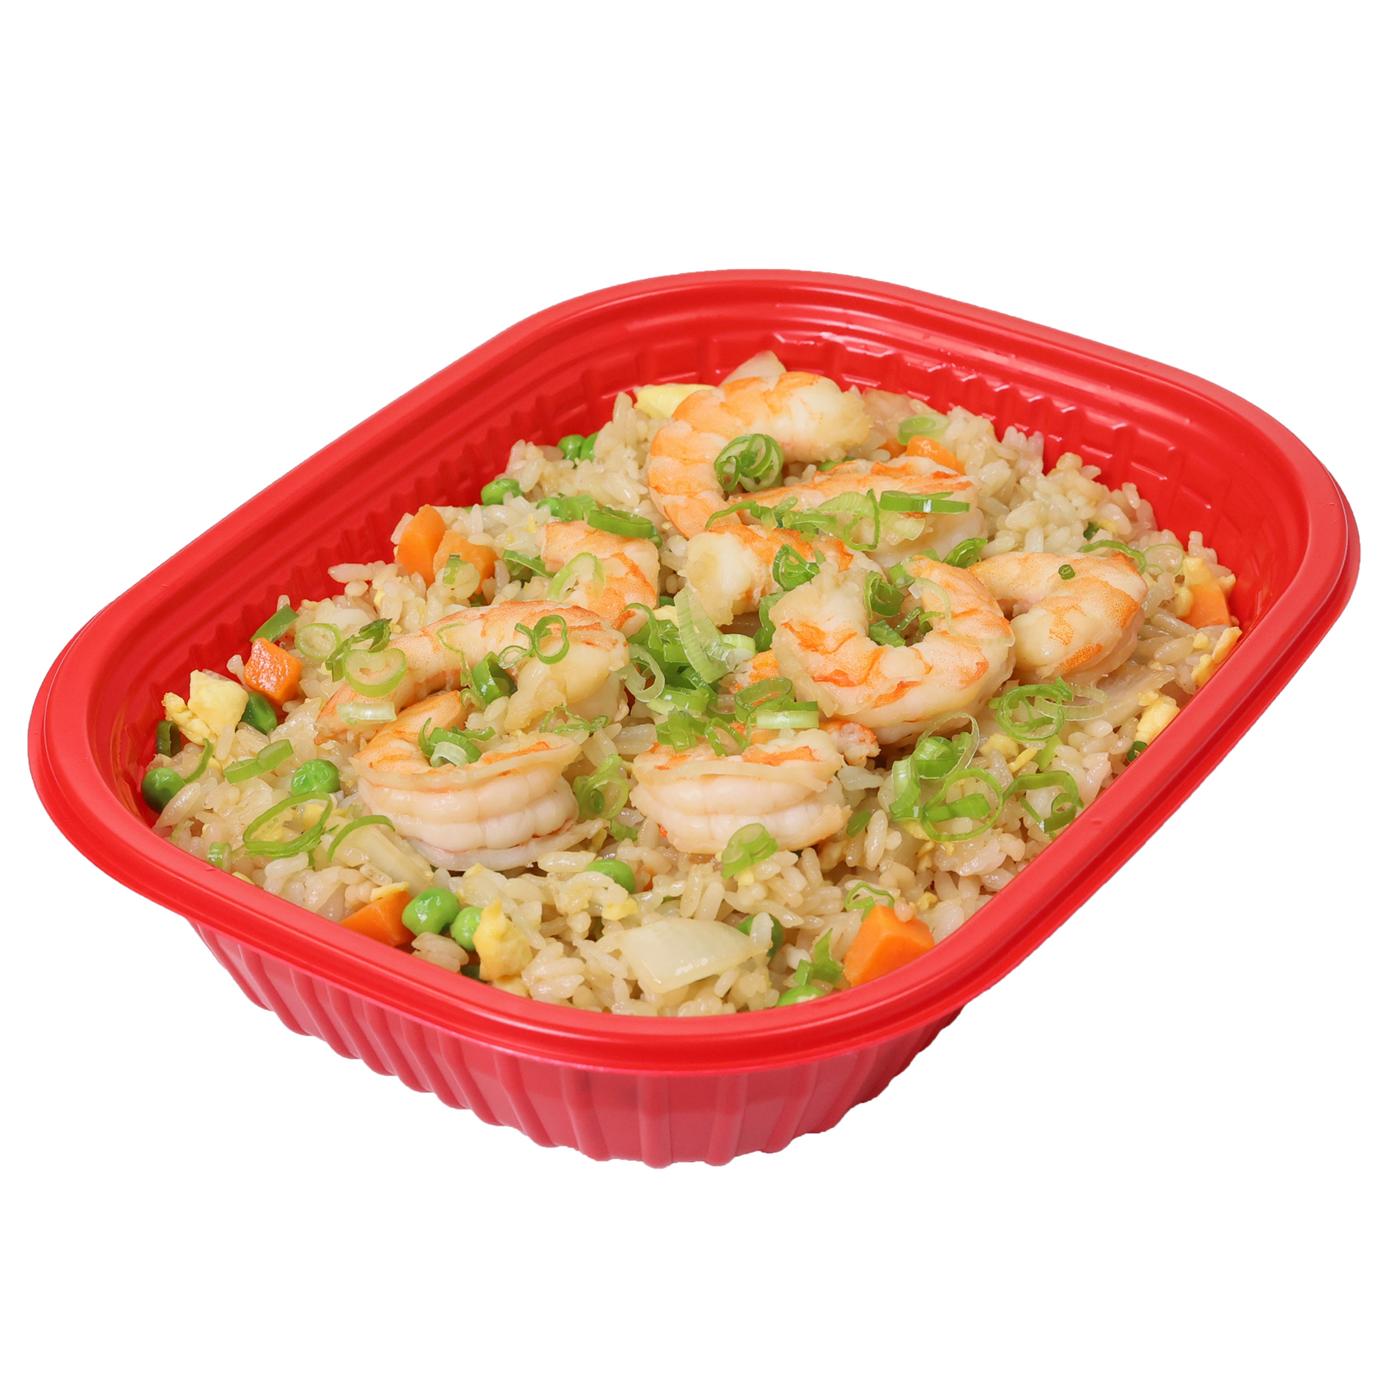 H-E-B Sushiya Shrimp Fried Rice Bowl - Served Hot; image 1 of 2